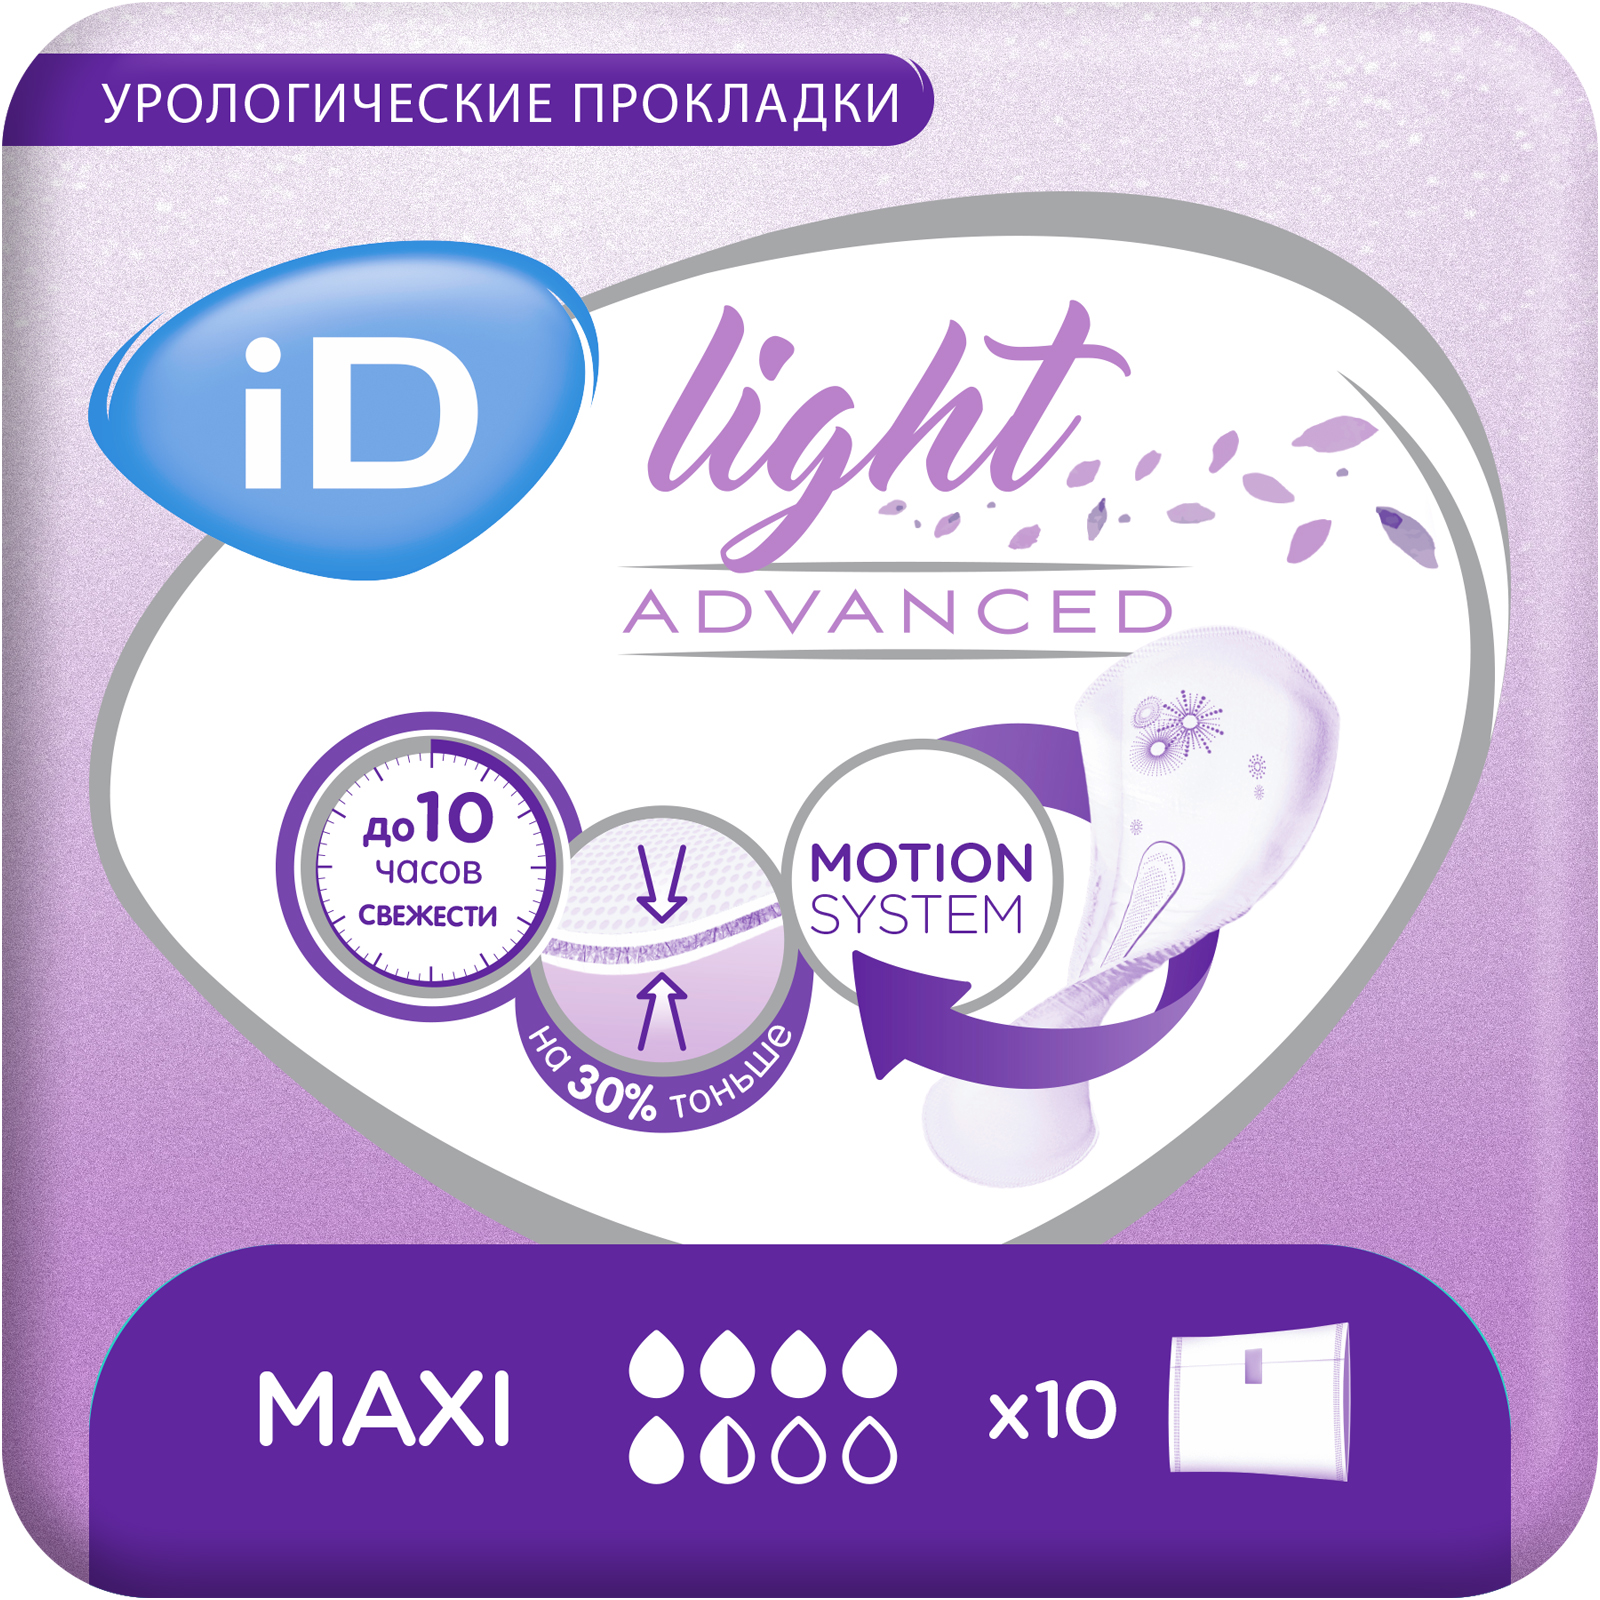 Купить Урологические прокладки iD Light Advanced Maxi 10 шт.